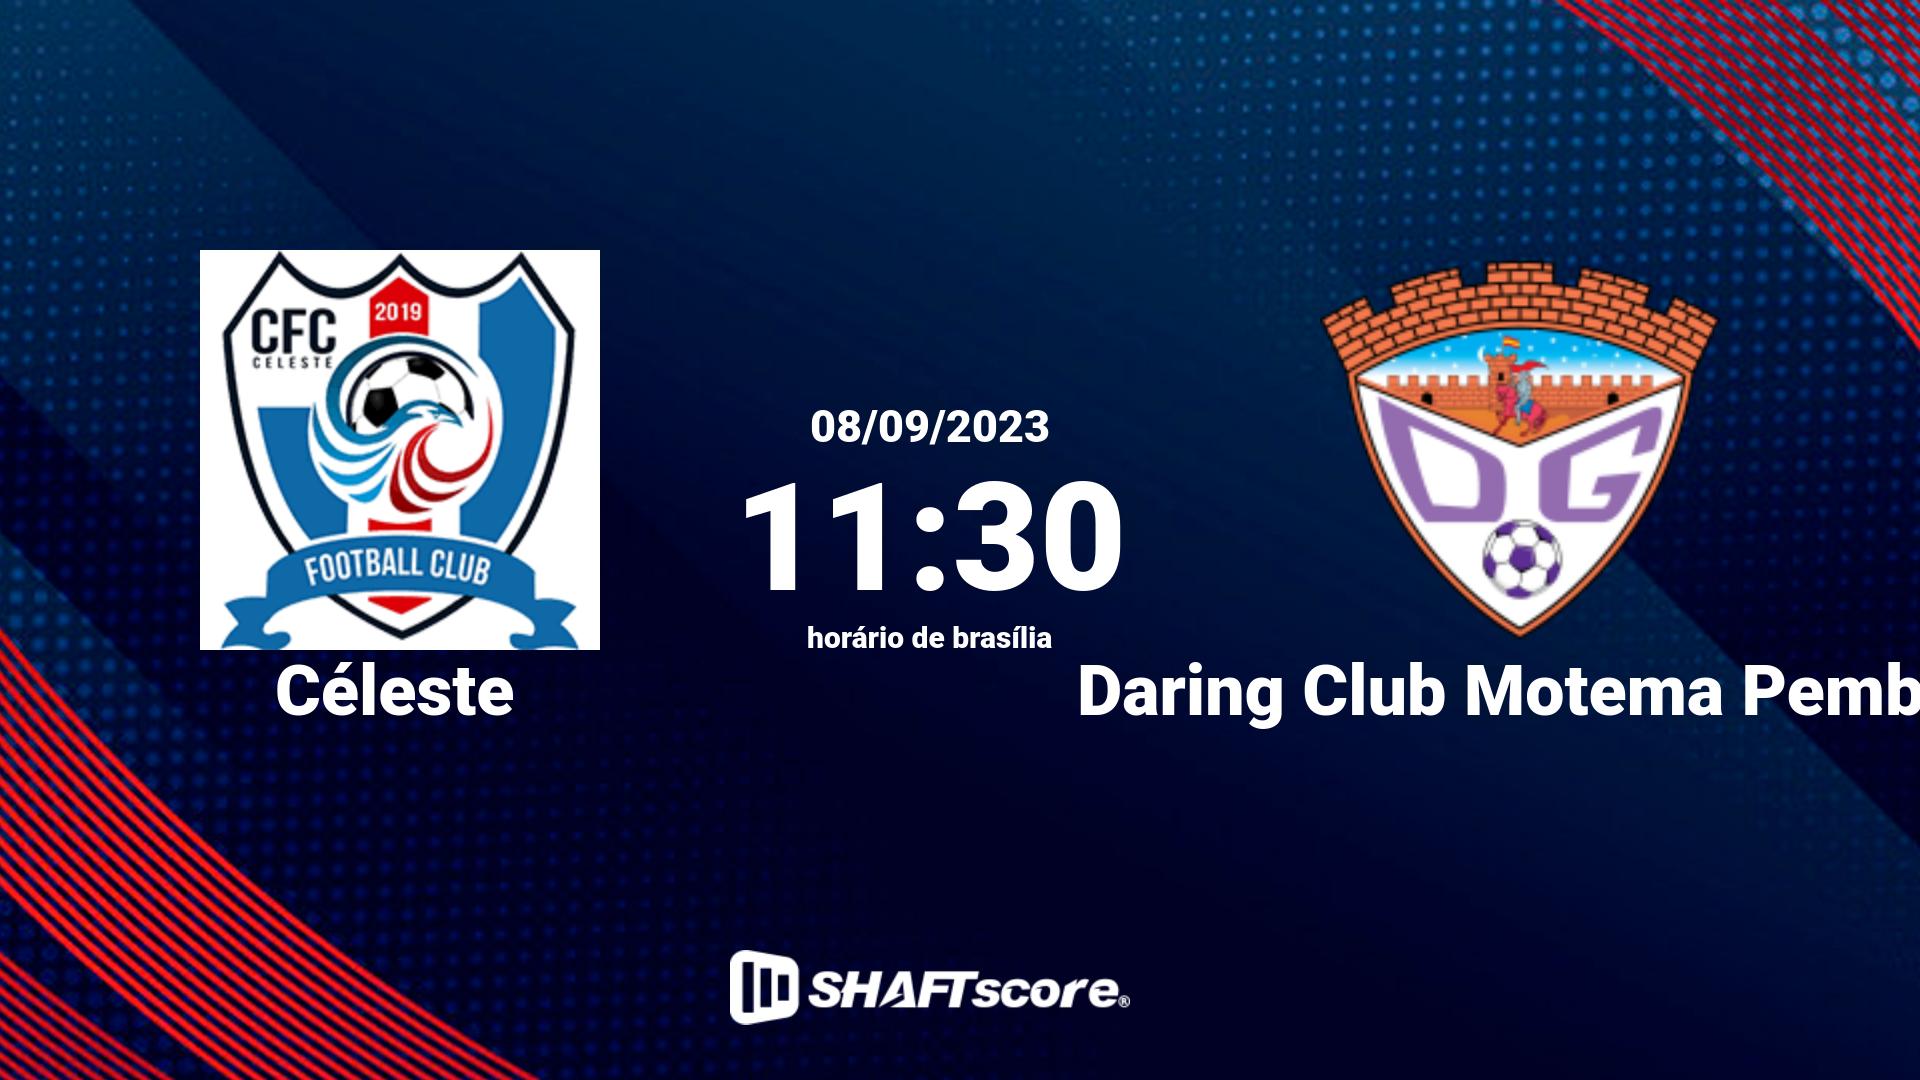 Estatísticas do jogo Céleste vs Daring Club Motema Pembe 08.09 11:30